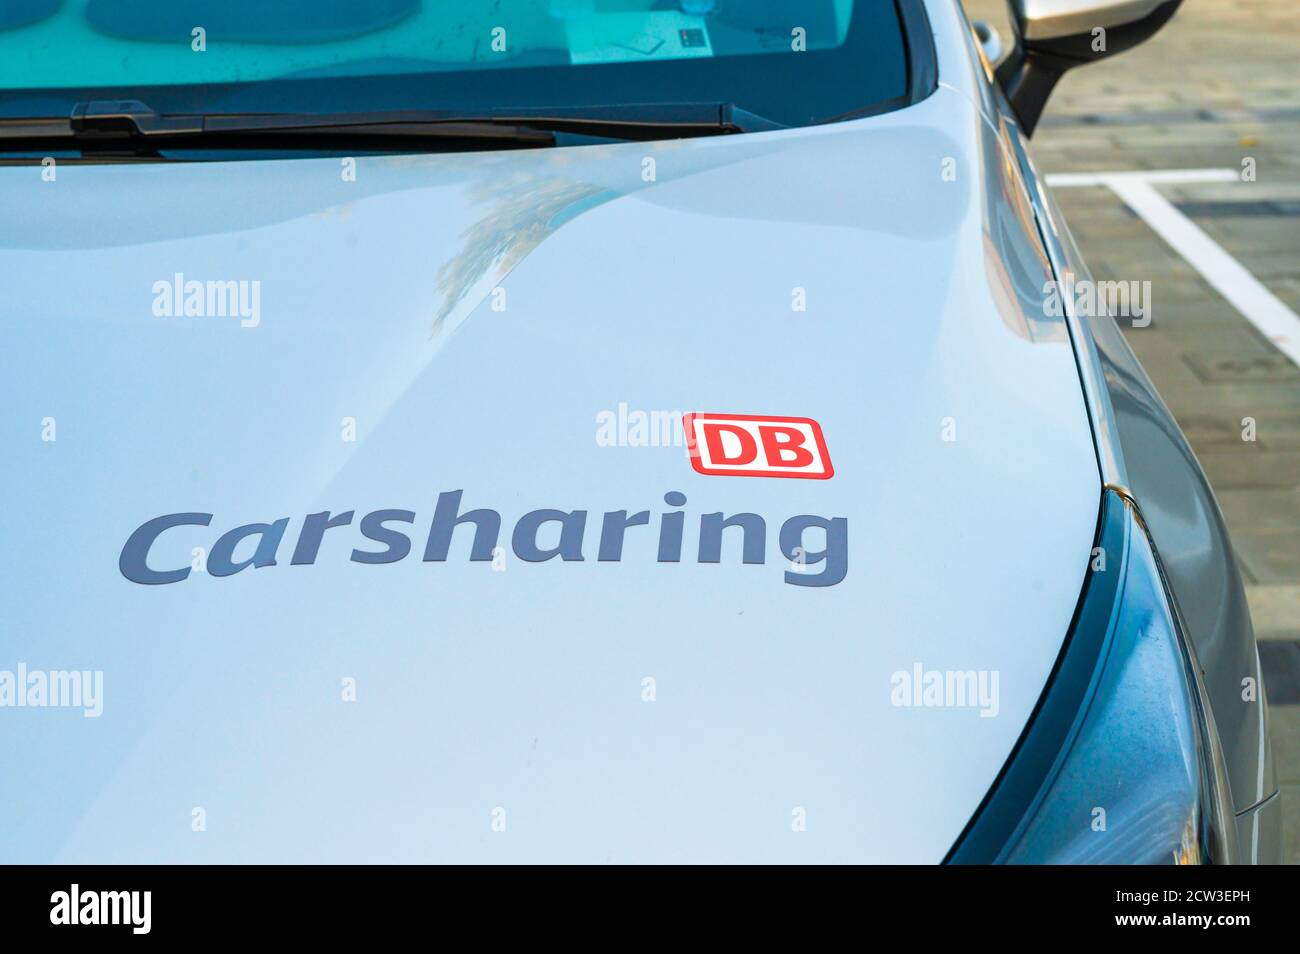 Deutschland , Cottbus , 15.09.2020 , Logo DB Carsharing auf der Motorhaube eines Autos Stockfoto